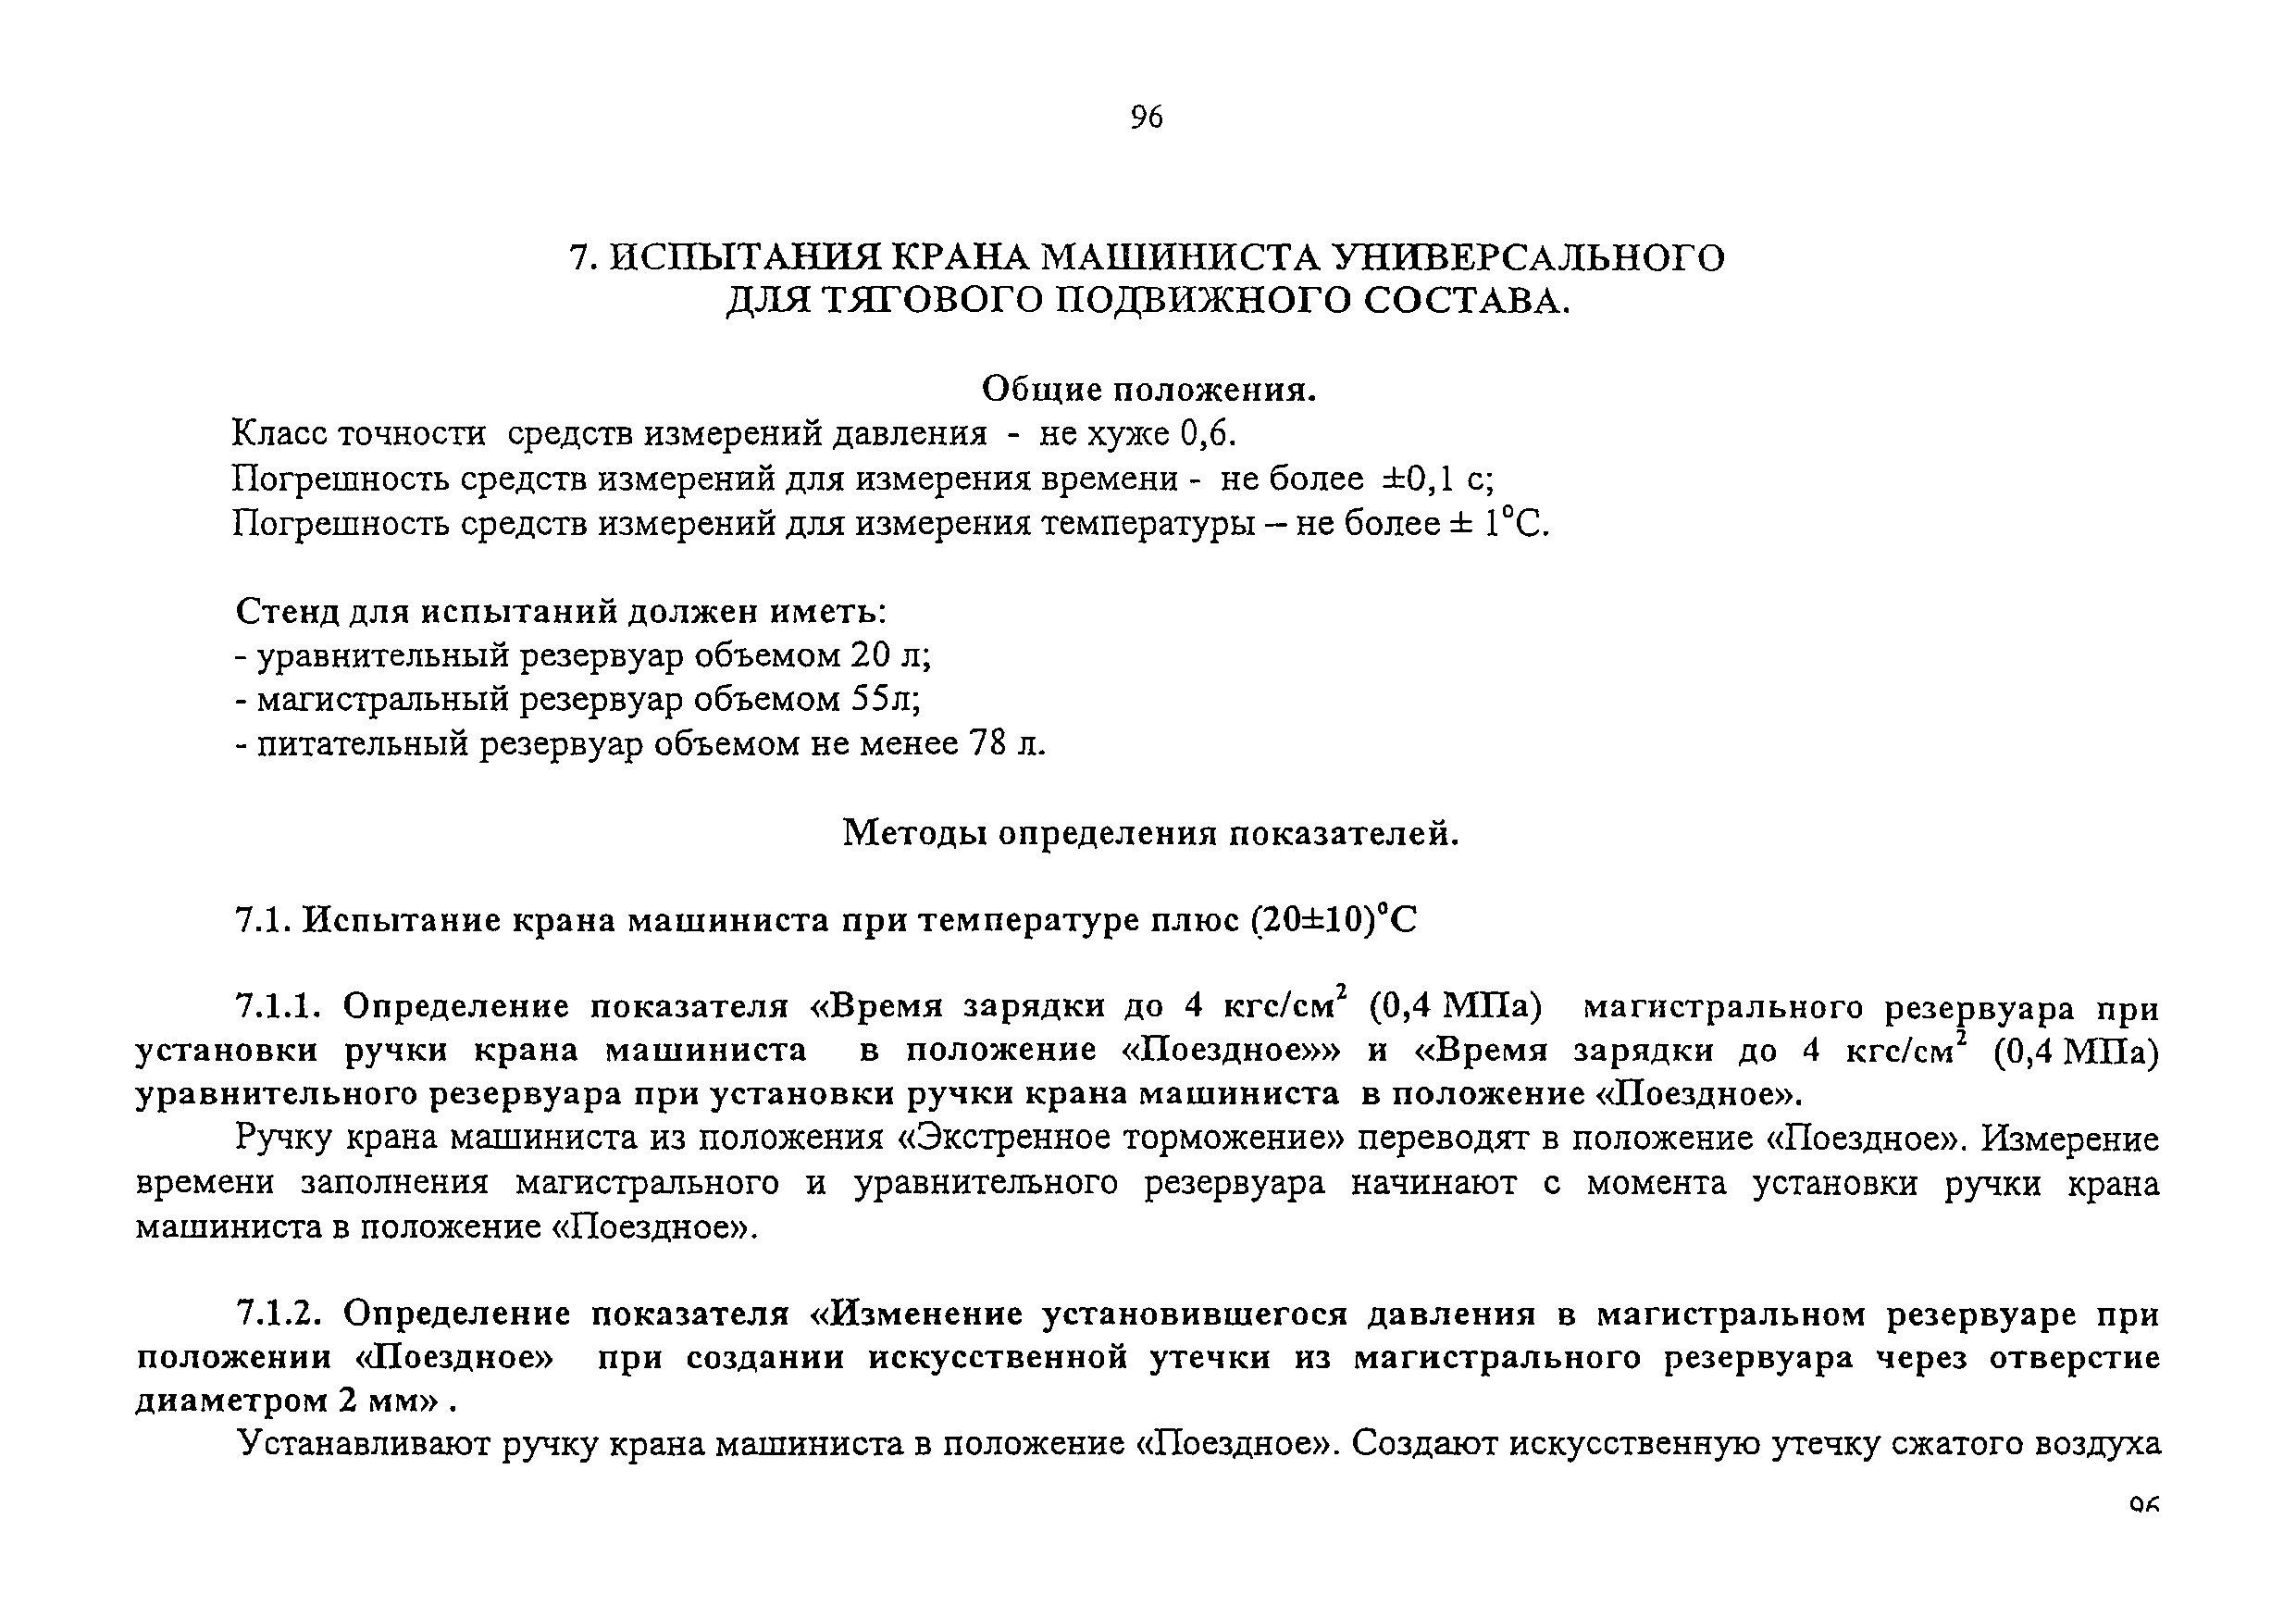 НБ ЖТ ЦТ-ЦЛ-ЦВ 01-98